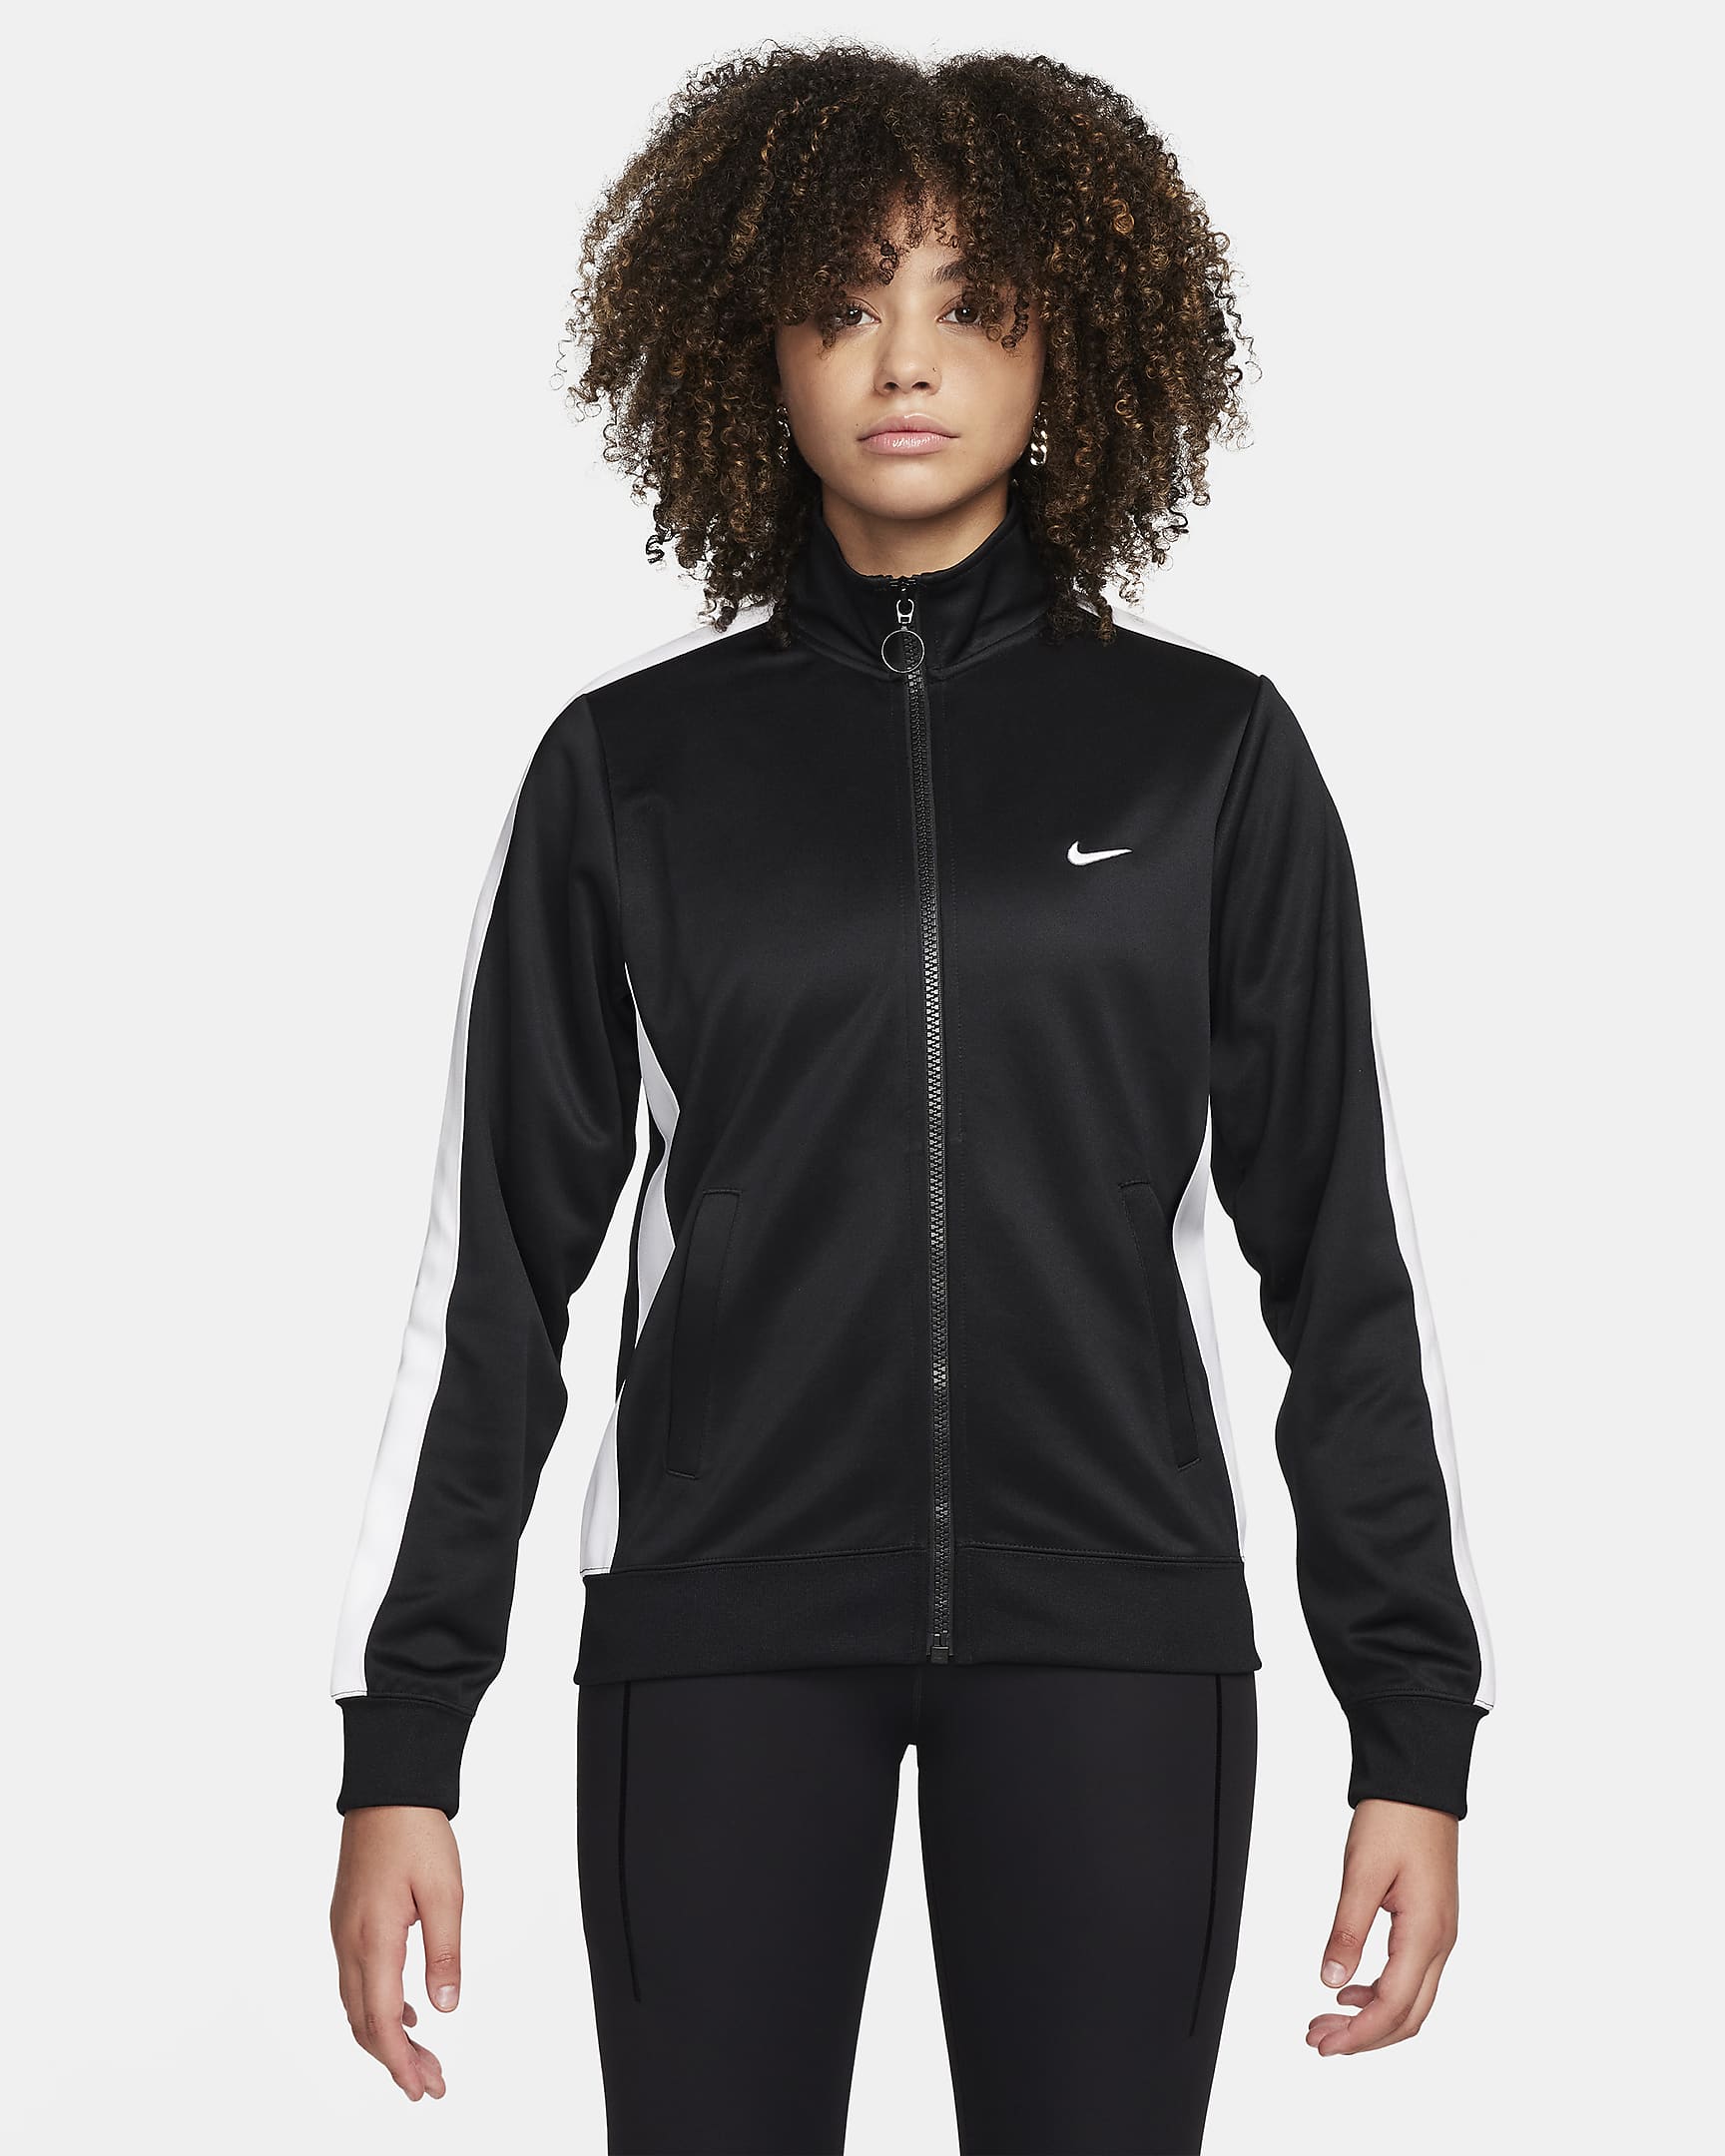 Nike Sportswear Women's Jacket. Nike IL